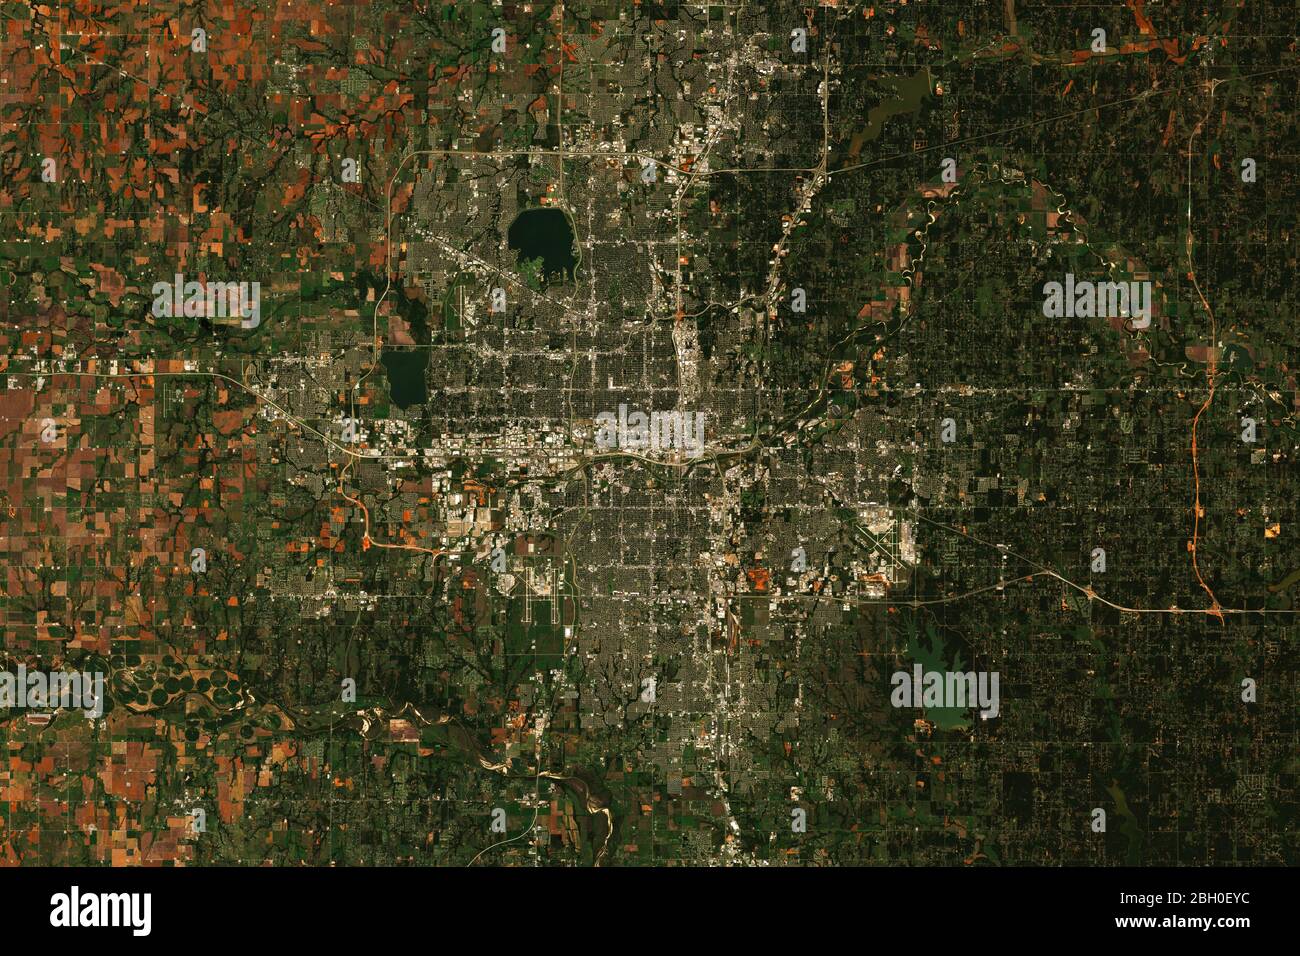 Image satellite haute résolution d'Oklahoma City, États-Unis - contient les données sentinelles Copernicus modifiées (2019) Banque D'Images